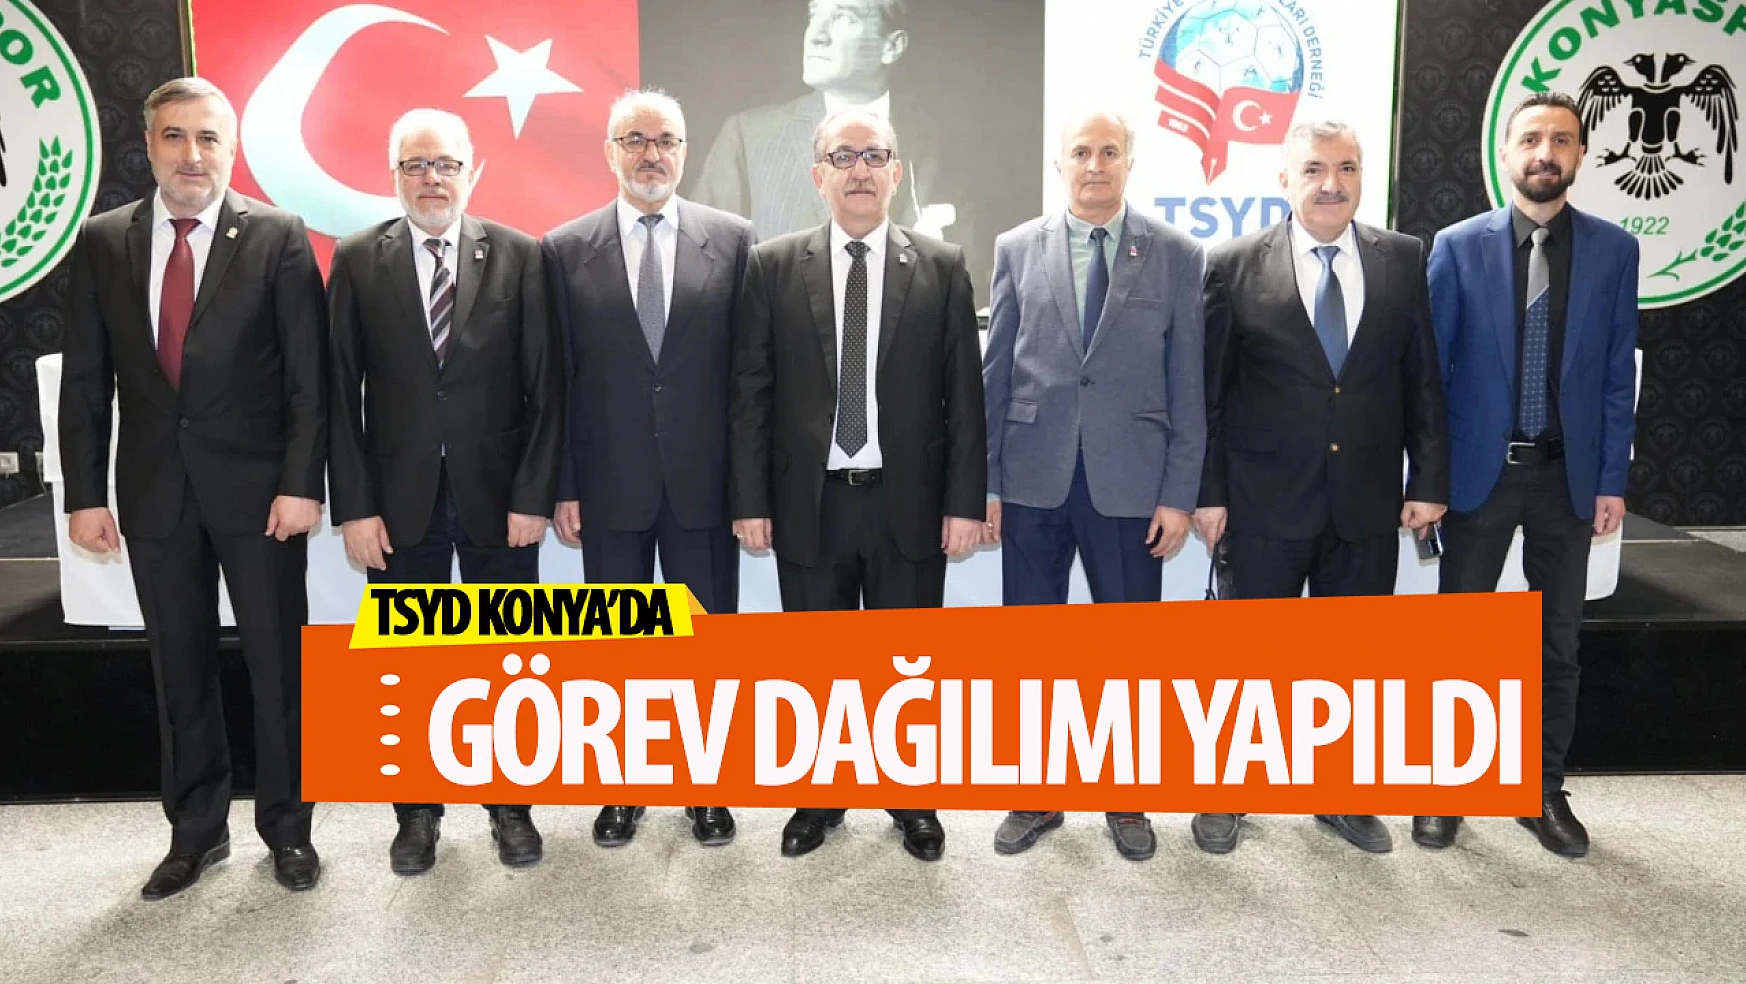 TSYD Konya'da görev dağılımı yapıldı